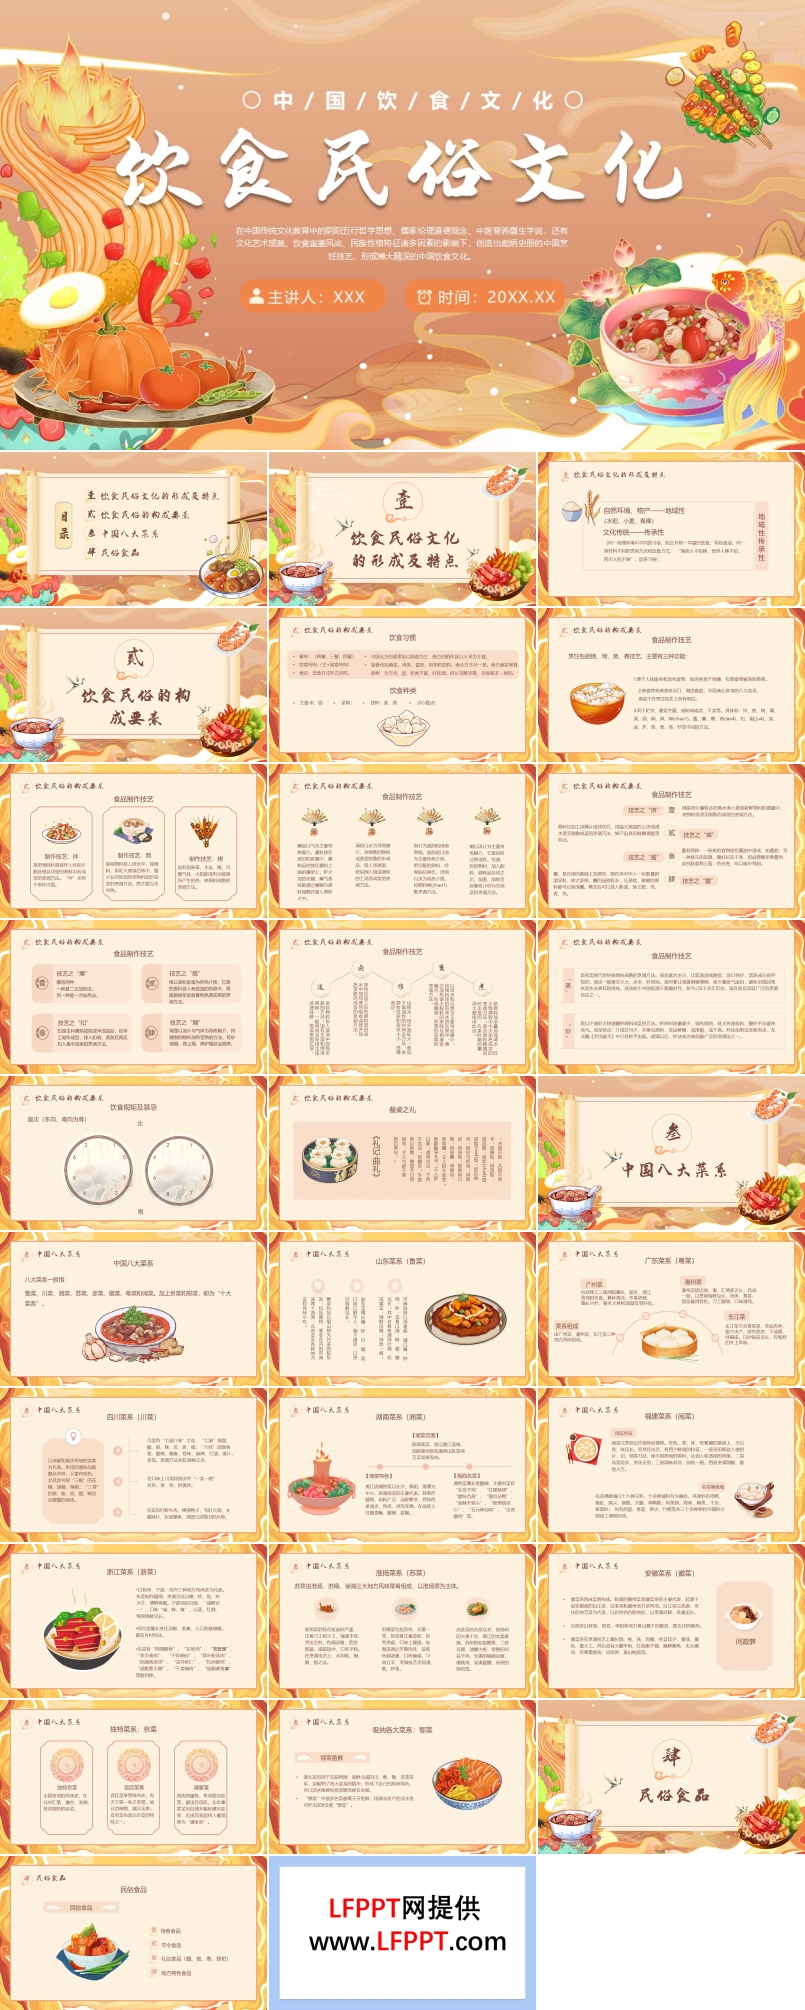 中国传统节日民俗与饮食文化介绍模板PPT课件